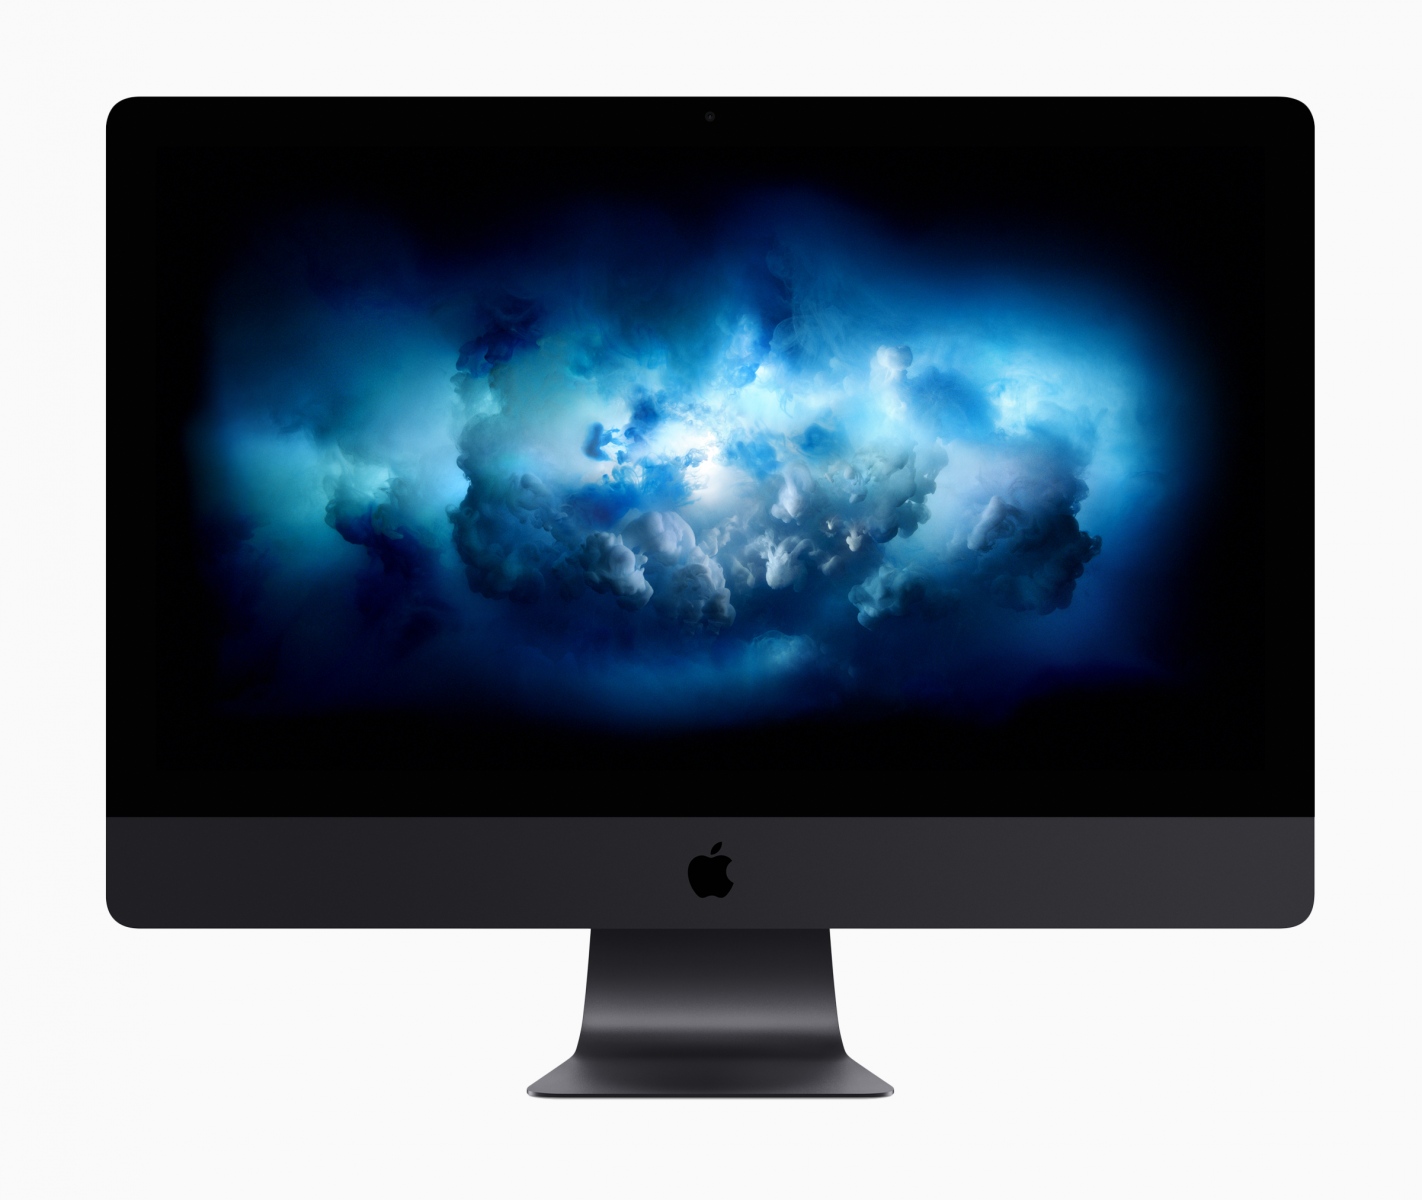 Für Nutzer, die wie zum Beispiel Videoprofis auf besonders leistungsstarke Computer angewiesen sind, gibt es Ende des Jahres zudem einen iMac Pro - «den bisher schnellsten Mac».